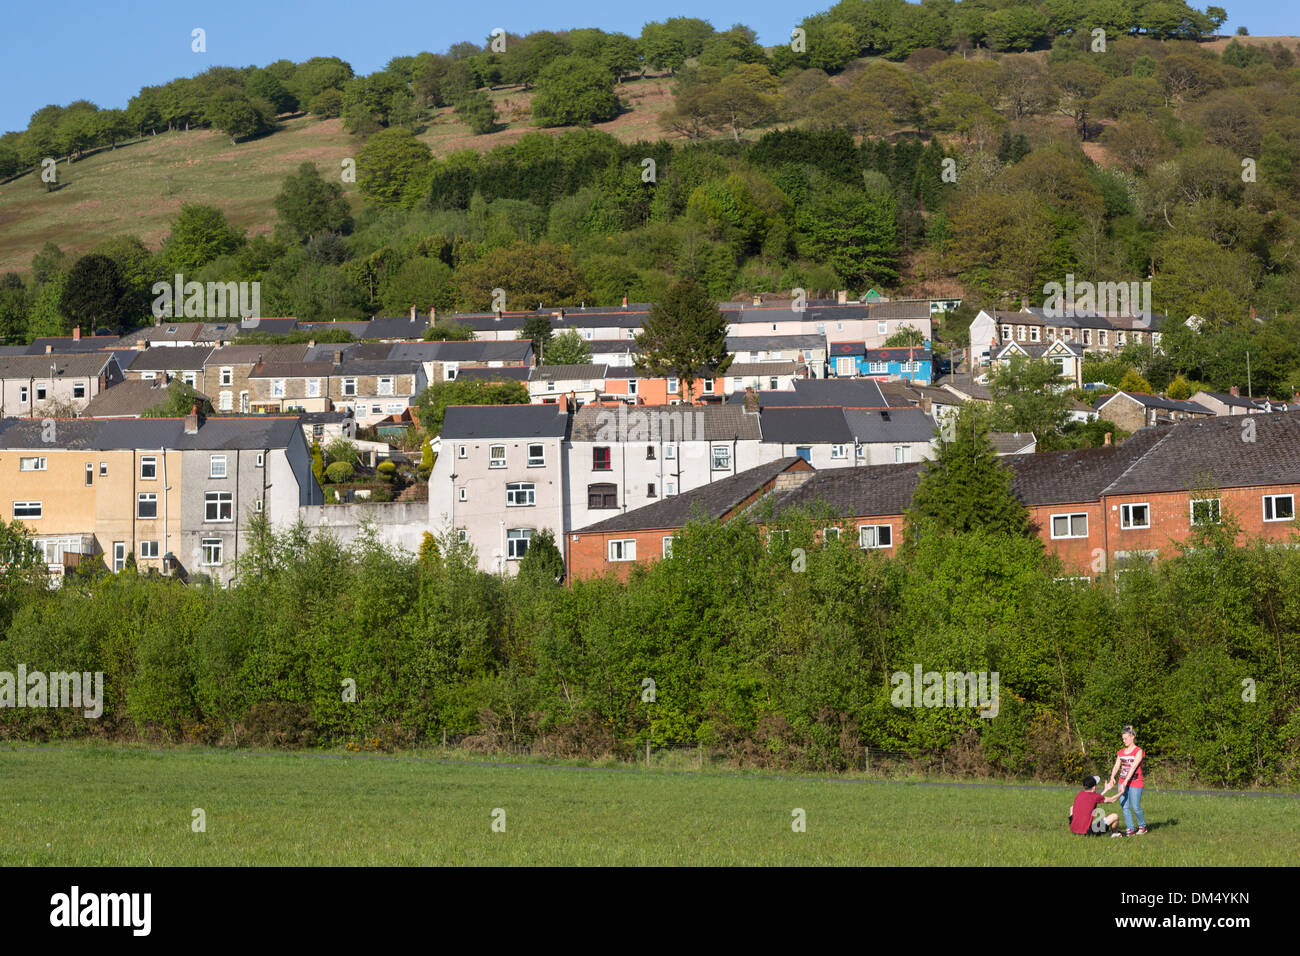 Zwei Personen auf dem Spielfeld vor Häusern, sechs Glocken, Wales, UK Stockfoto